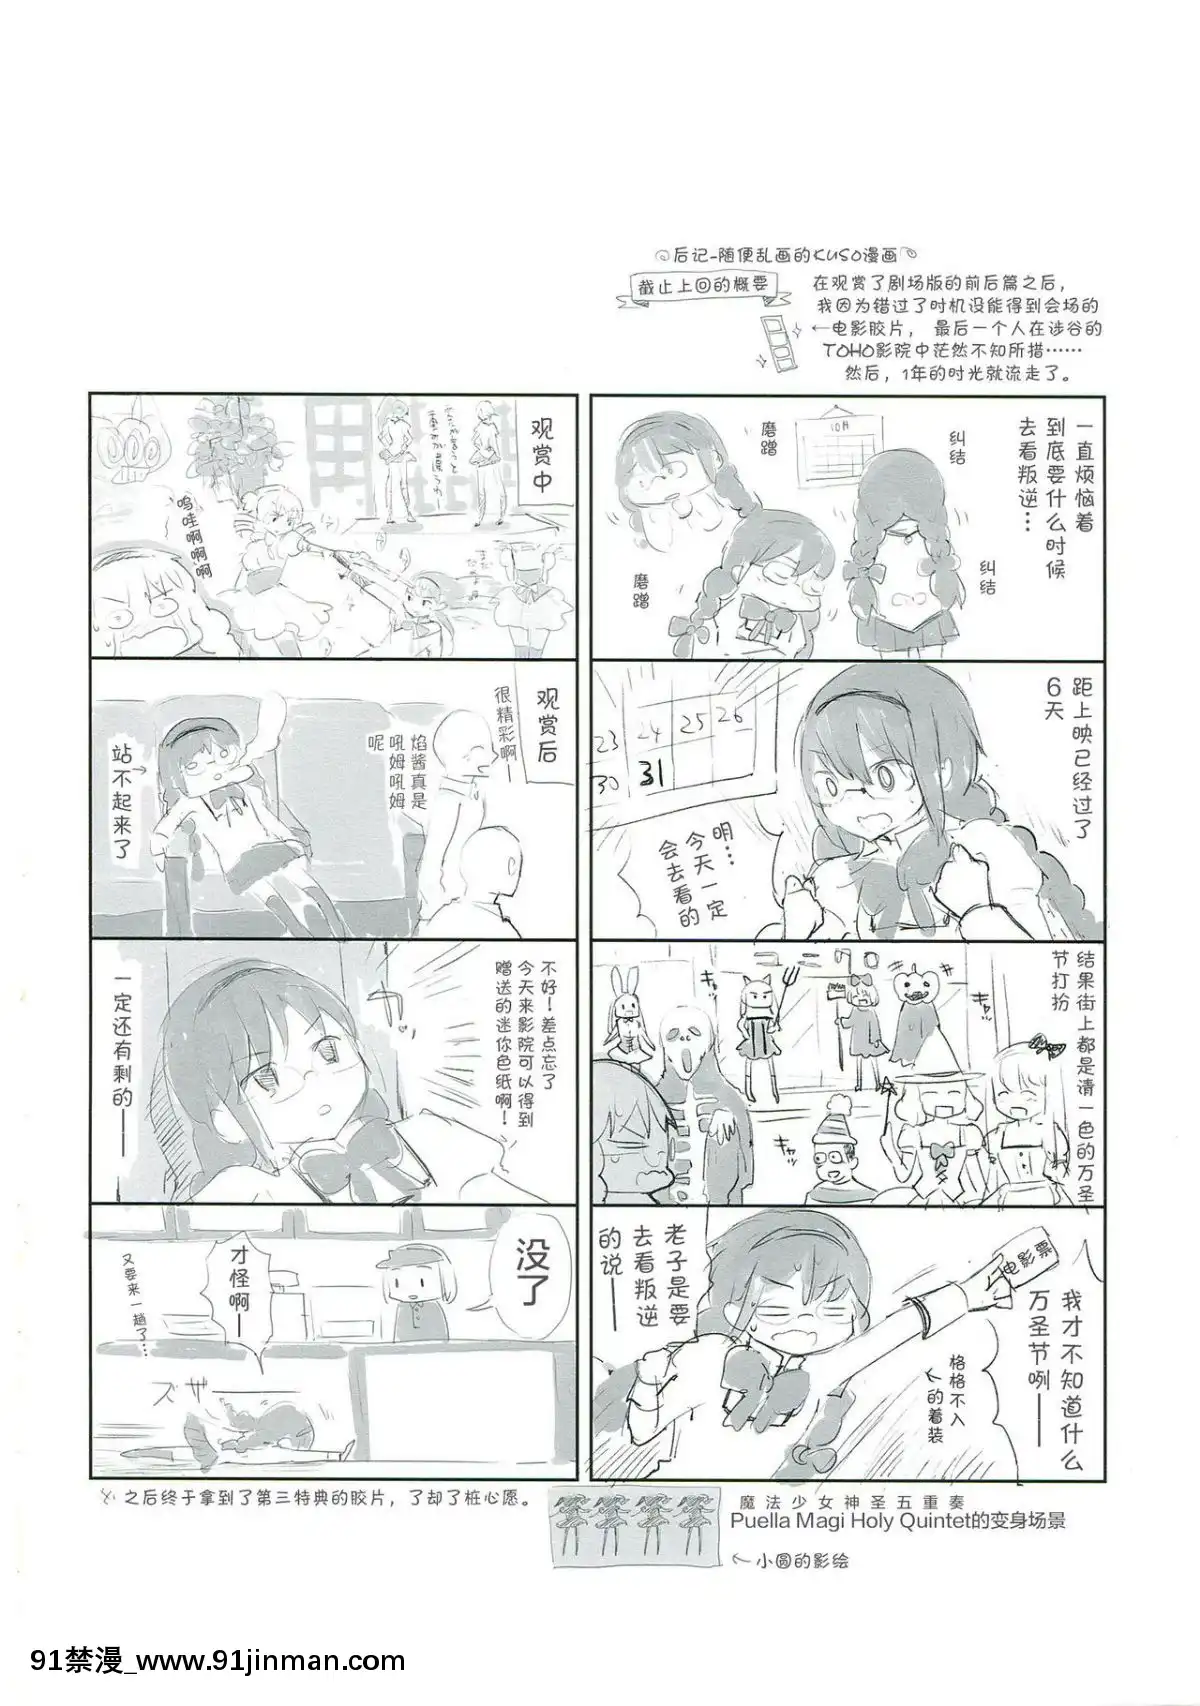 [Cách trở thành người Trung Quốc] (C85) [Flowerchild Ueda (FLOWERCHILD)] Betsu no Ikimono (Puella Magi Madoka Magica)【truyện tranh marvel english】